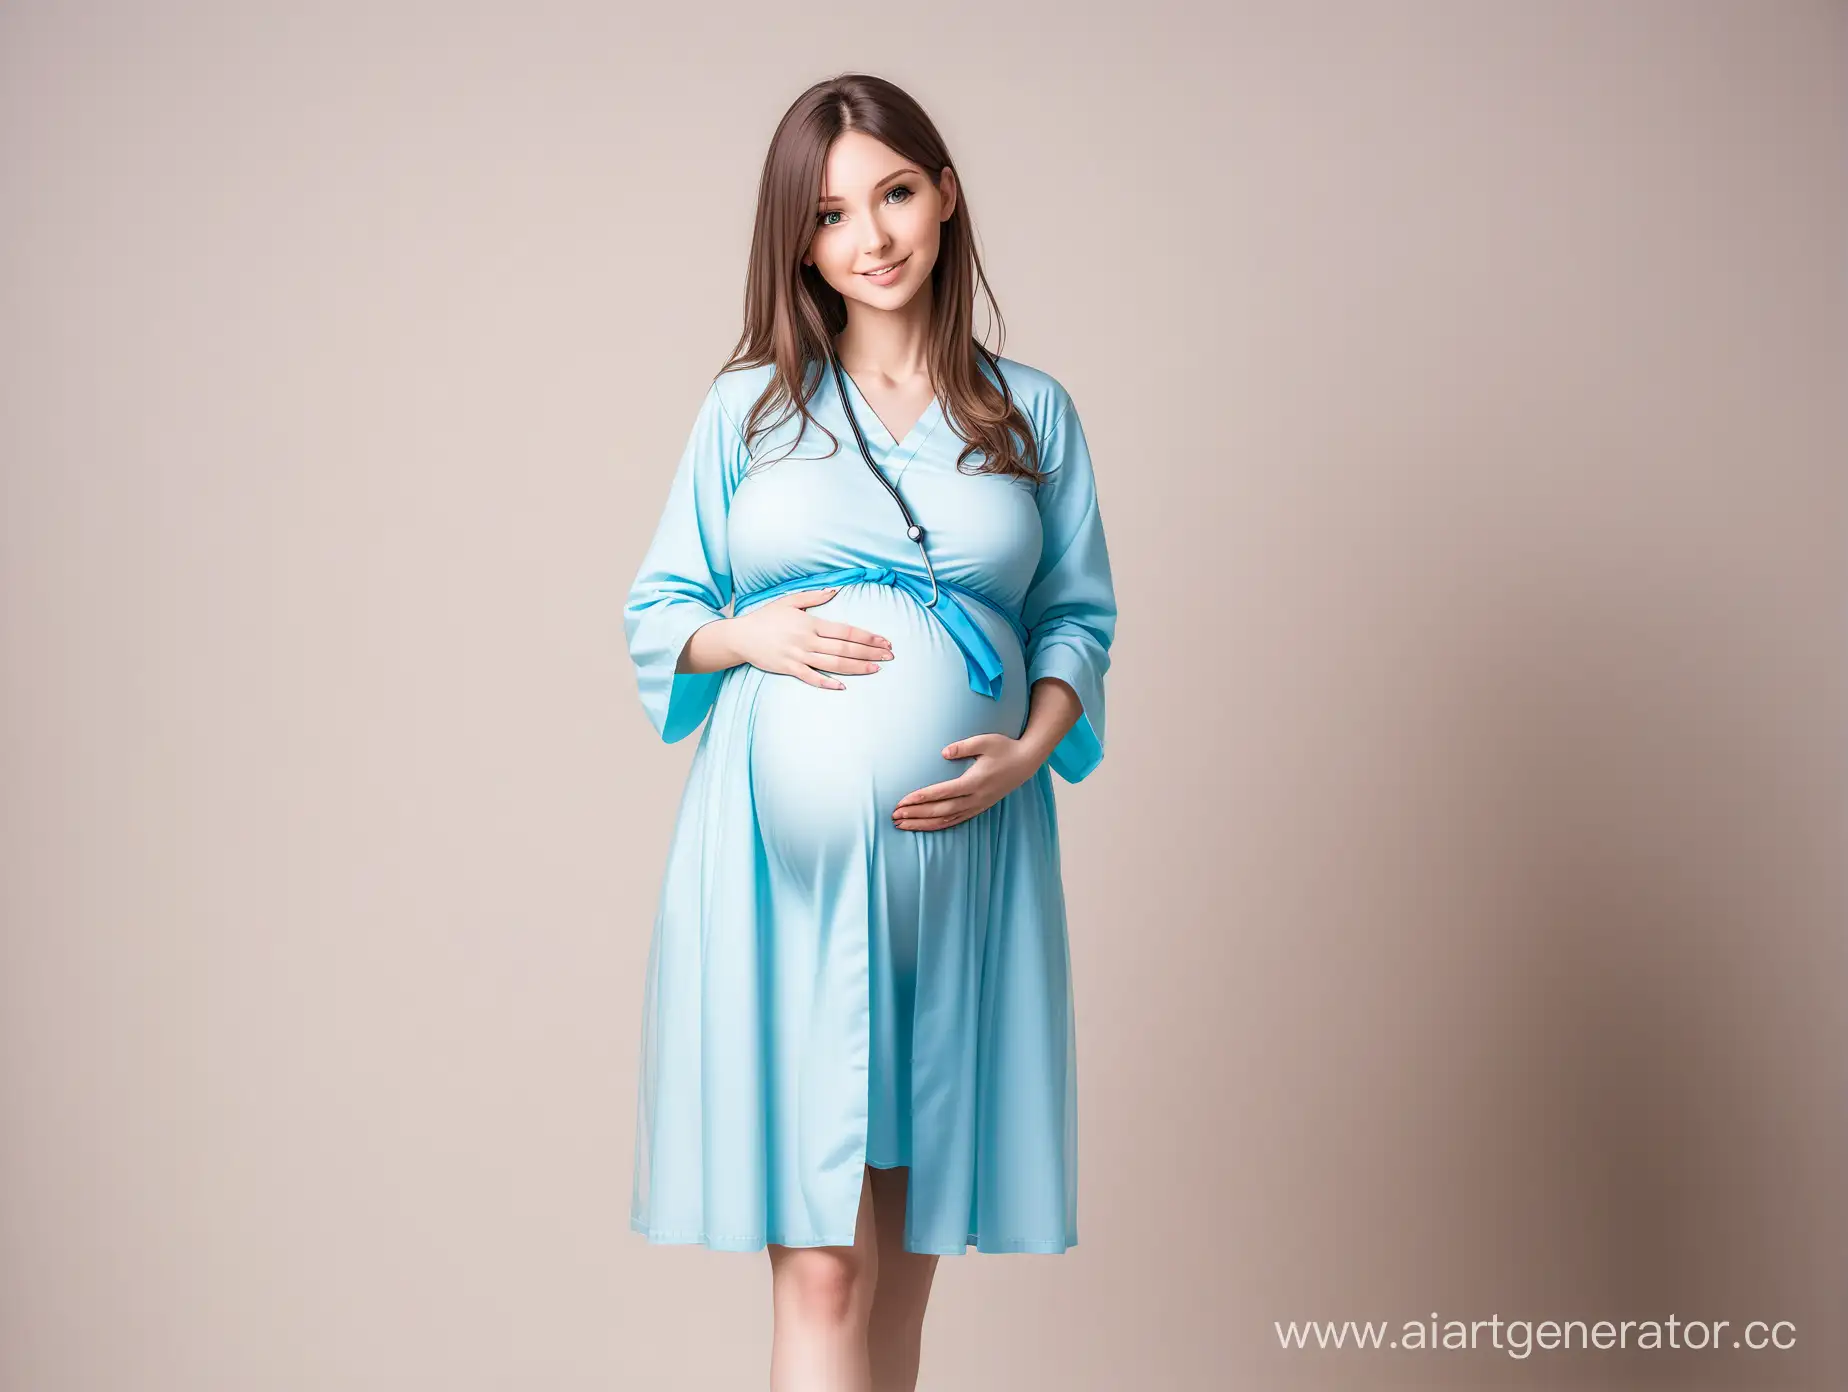 беременная девушка в медицинском халате